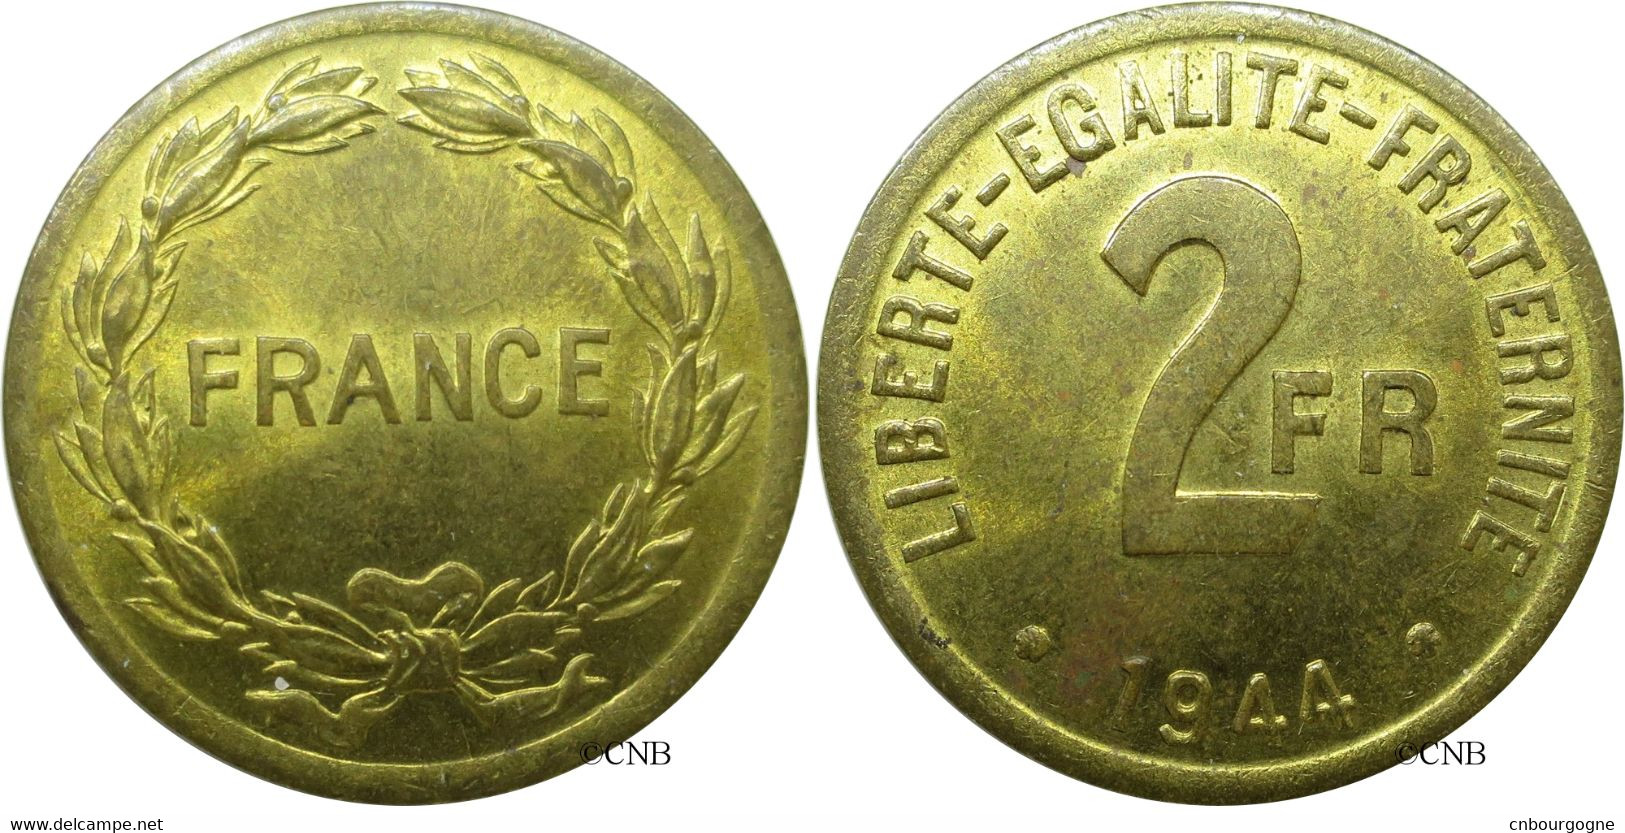 France - France Libre - 2 Francs France / Philadelphie 1944 - SUP/AU58 - Fra2146 - 2 Francs